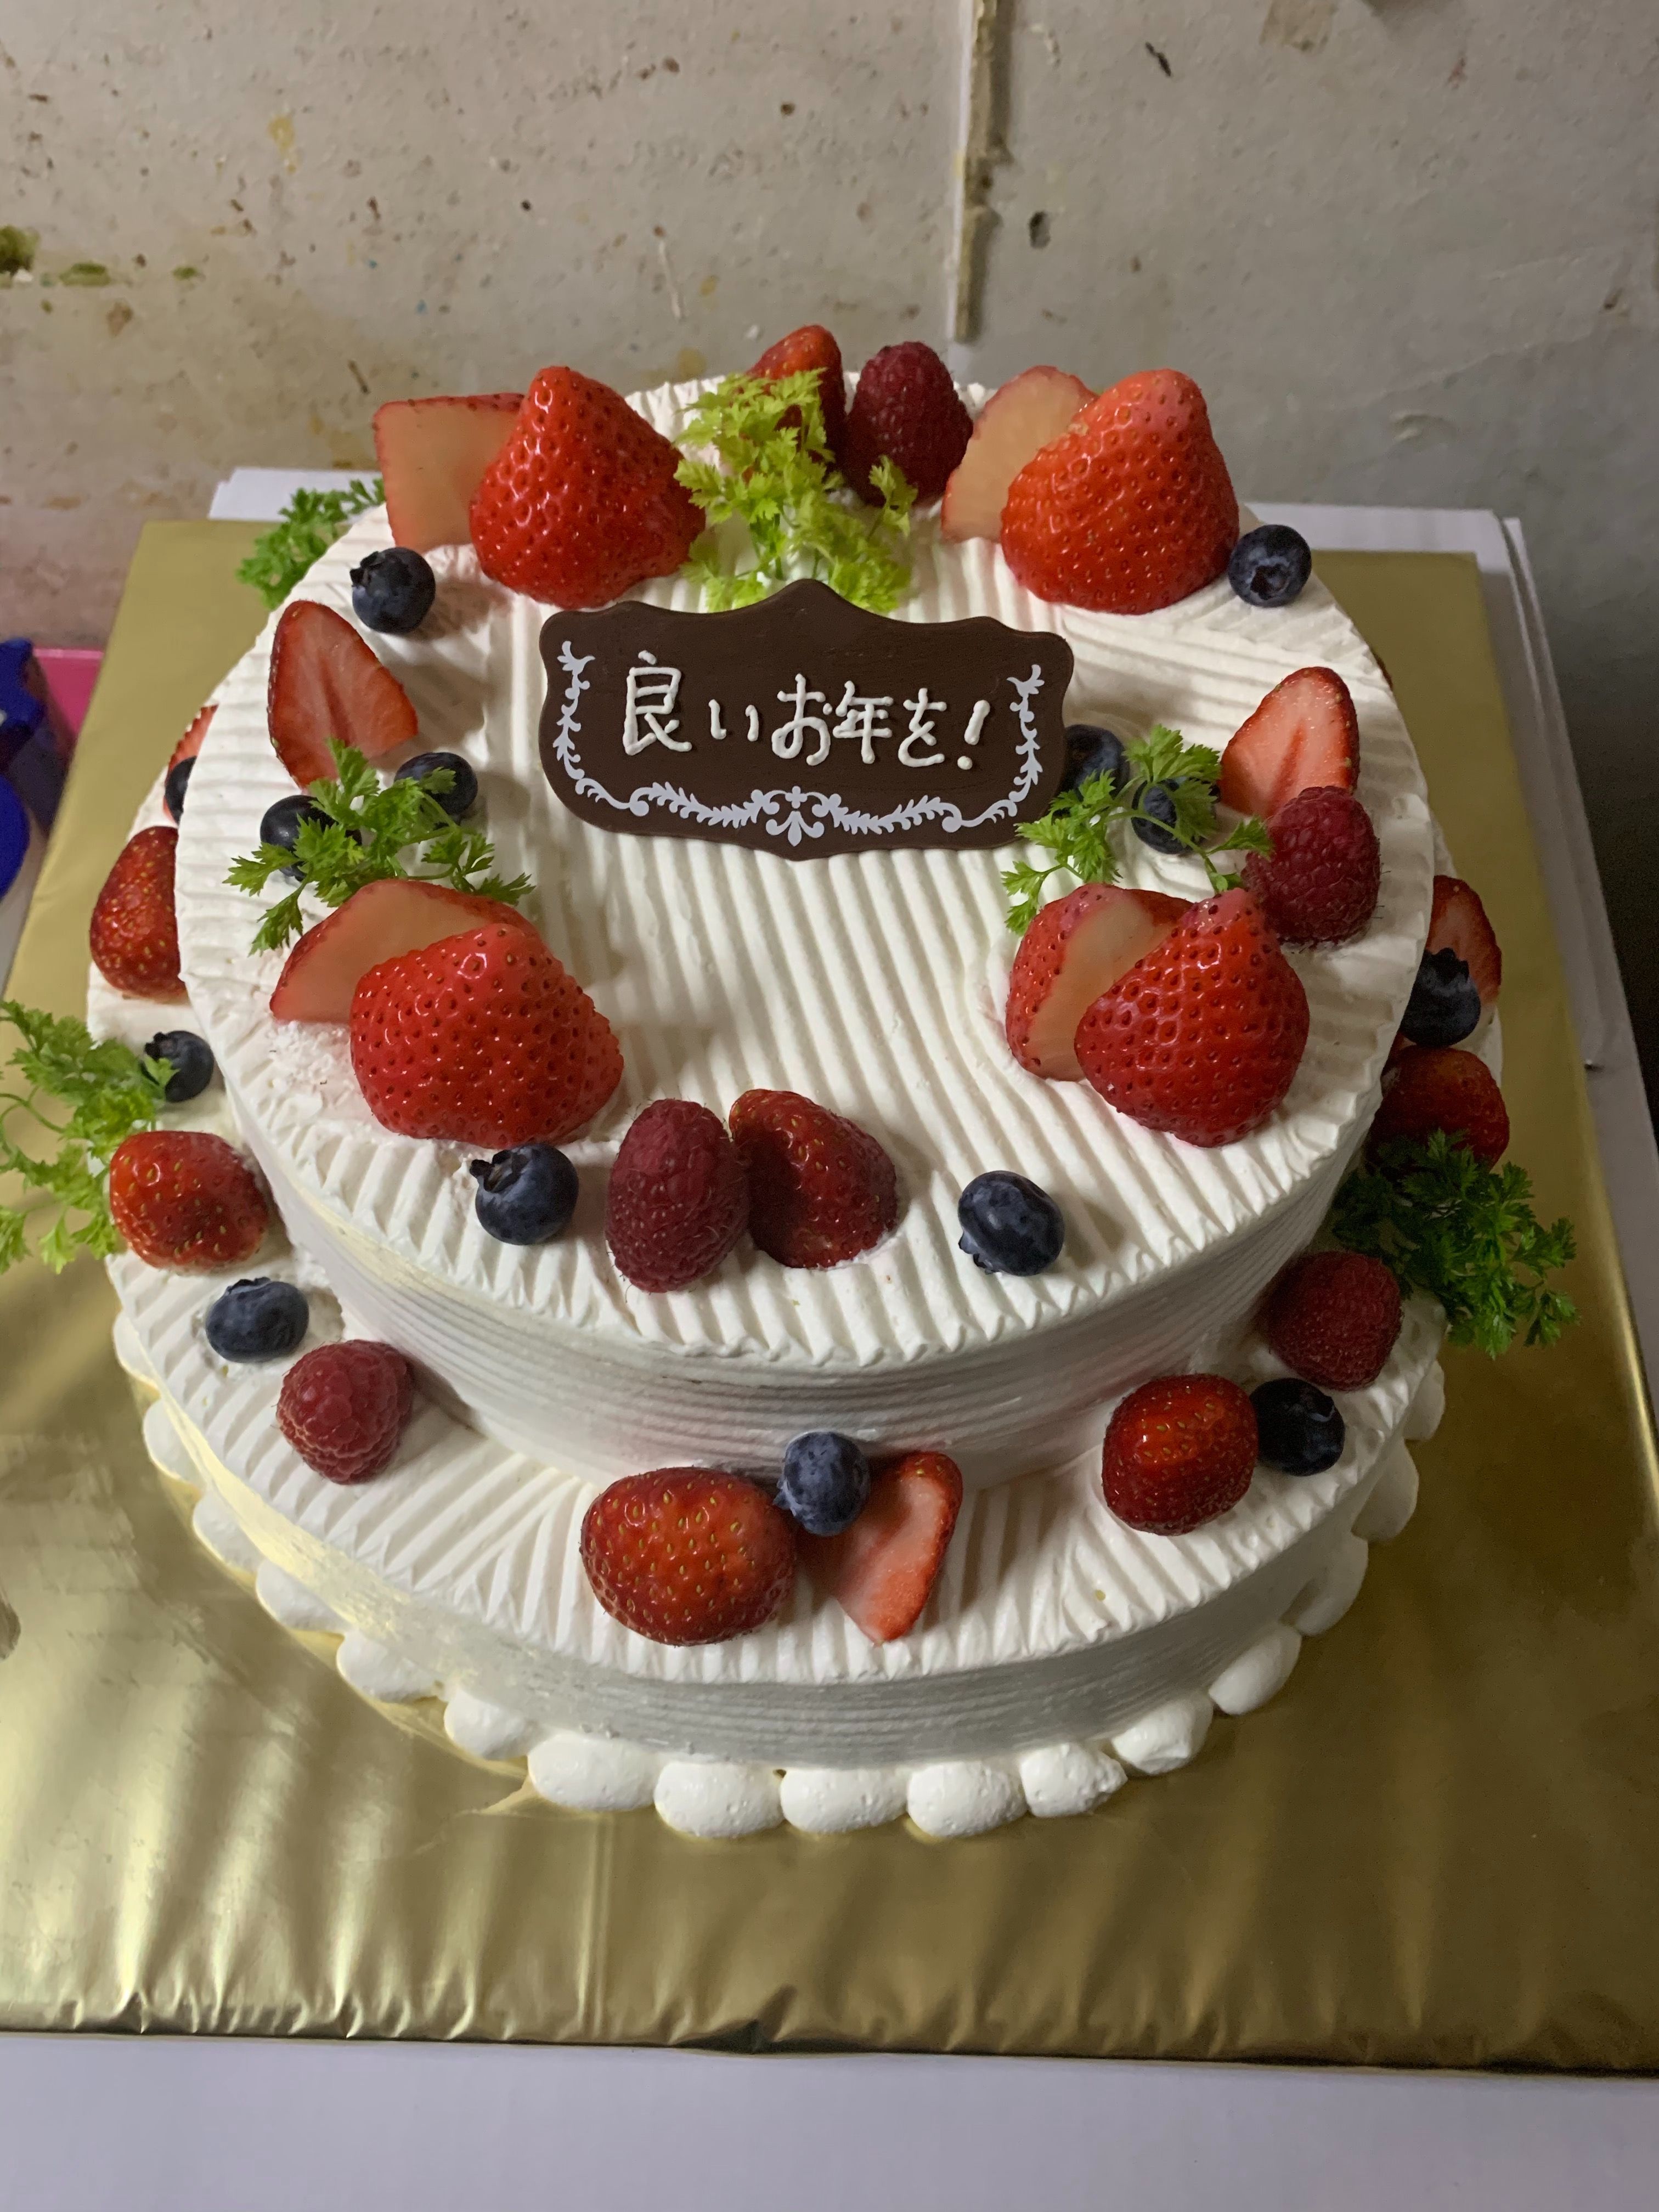 祭事ケーキ 宅配 川崎 横浜 デコレーションケーキのデリバリーショップ 楽天ブログ